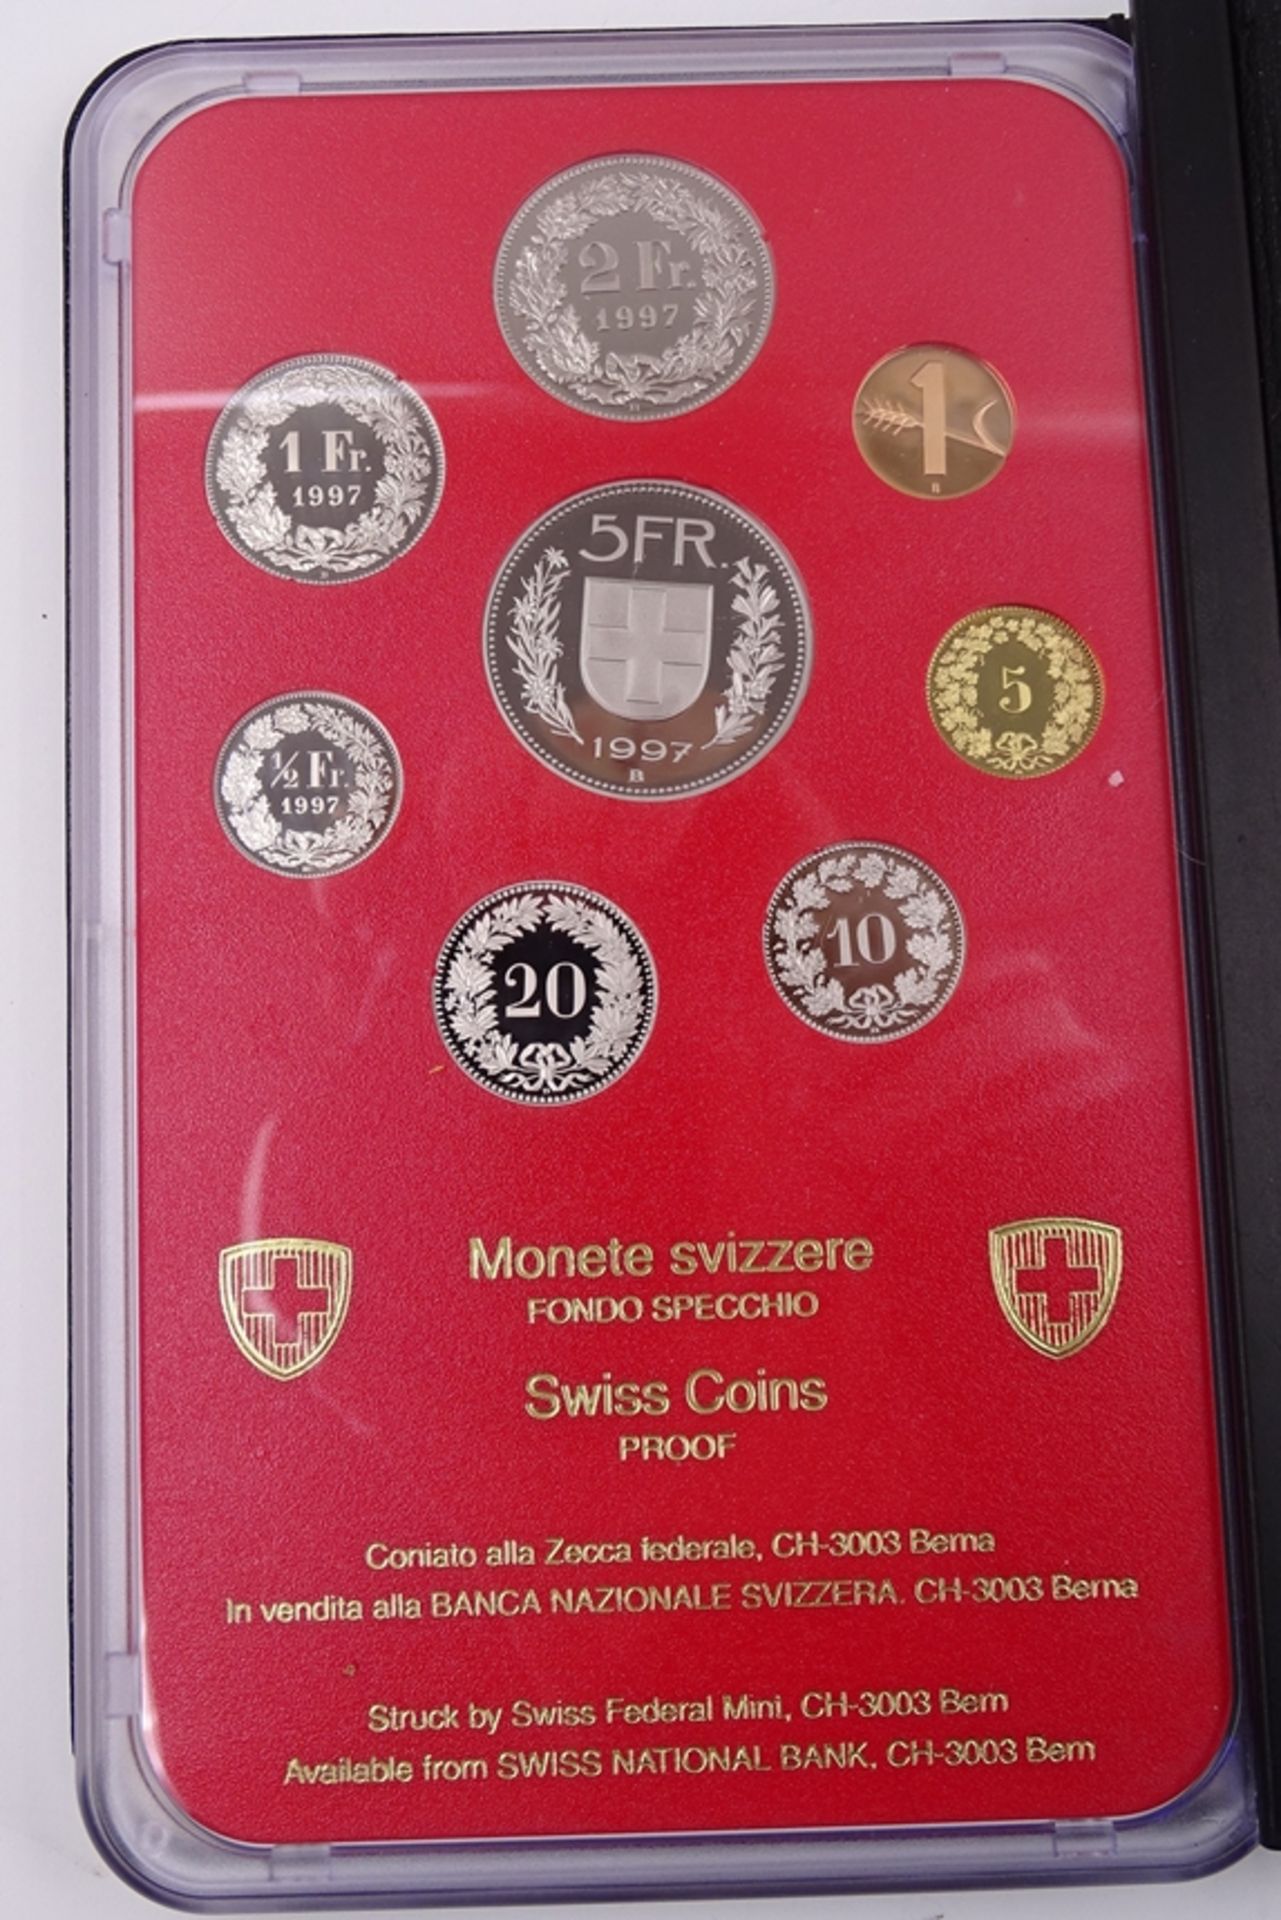 Münzsatz Schweizer Franken 1997, 8,86 CHR, in Schatulle, Umschlag und Schuber - Bild 4 aus 5